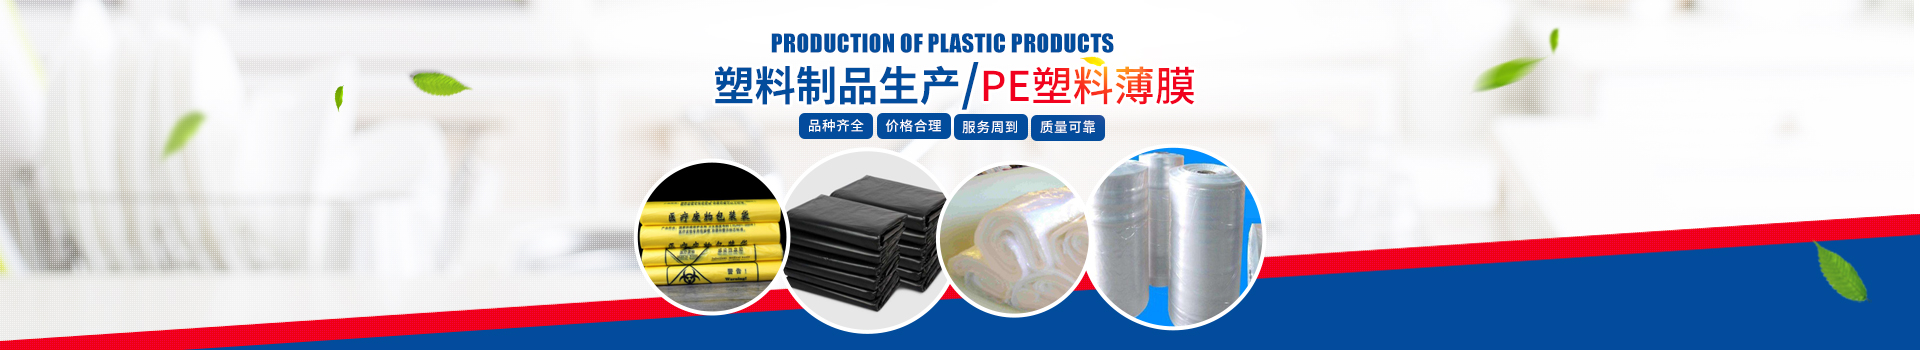 長沙市華大塑料制品有限公司